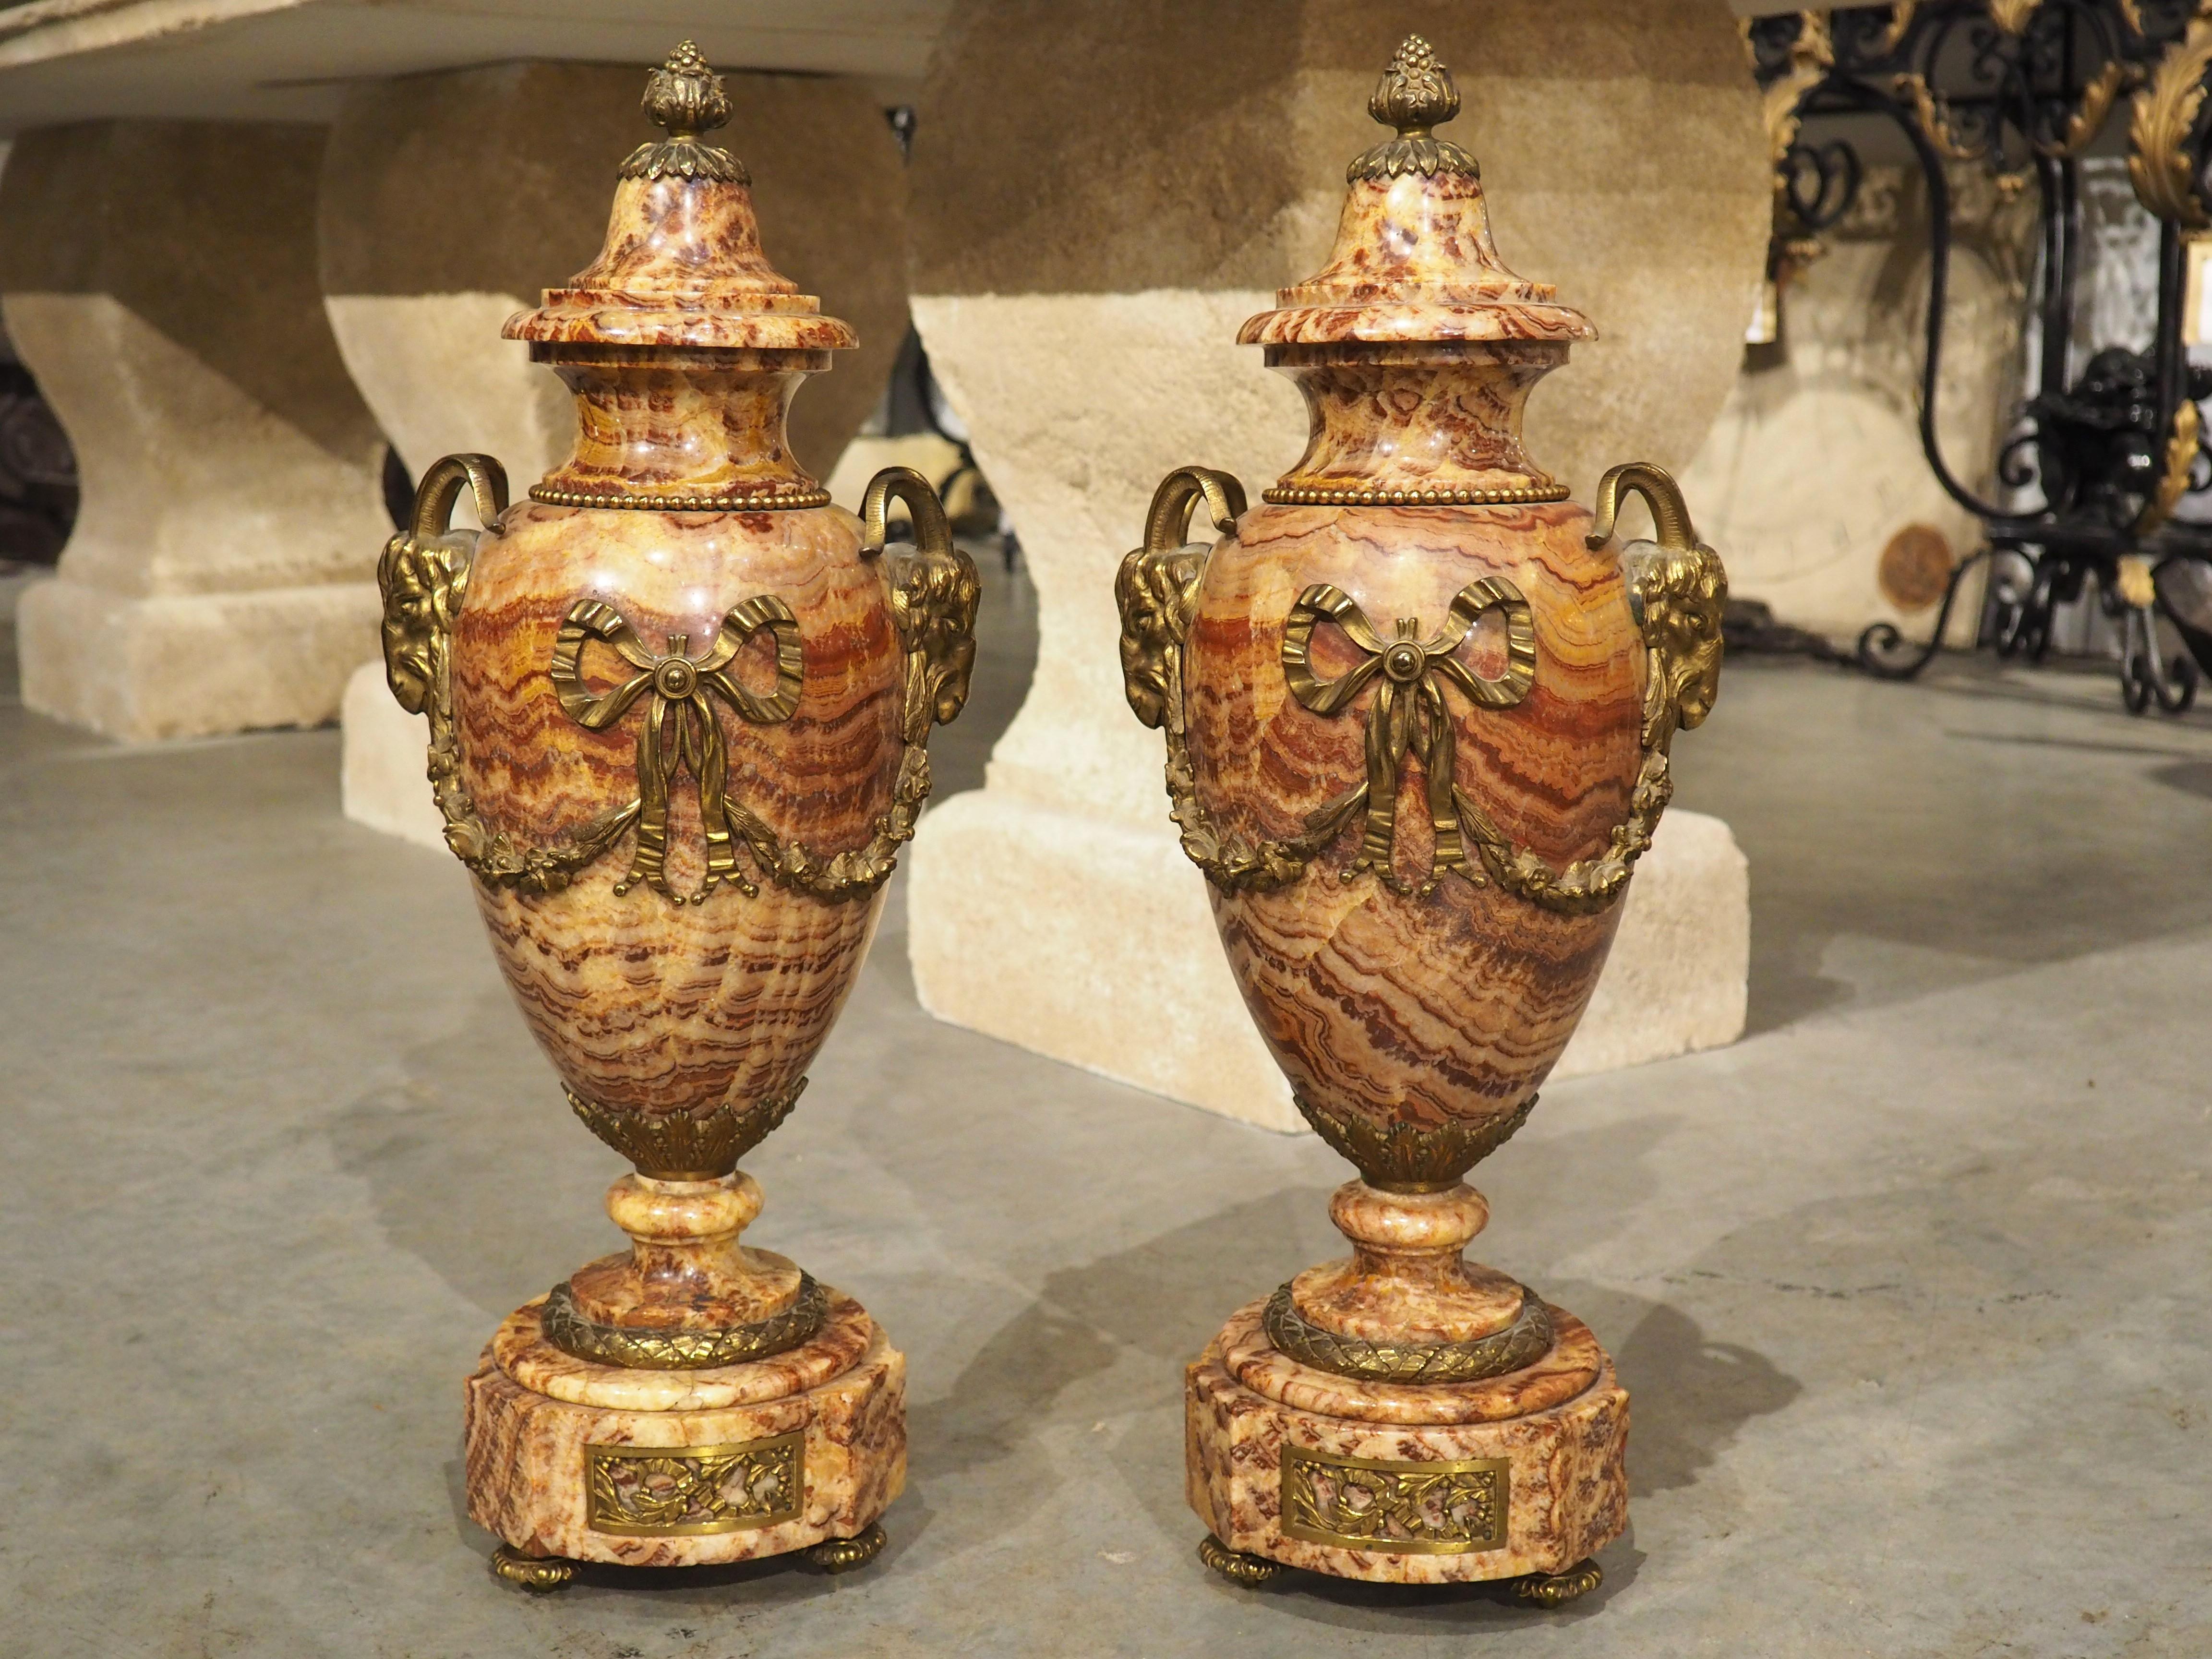 Bien que l'origine des cassolettes remonte à l'Europe et à l'Asie anciennes, ce n'est qu'à la fin du XVIIIe siècle que les cassolettes ont commencé à prendre la forme d'urne que l'on peut voir sur cette paire de cassolettes en marbre et en bronze